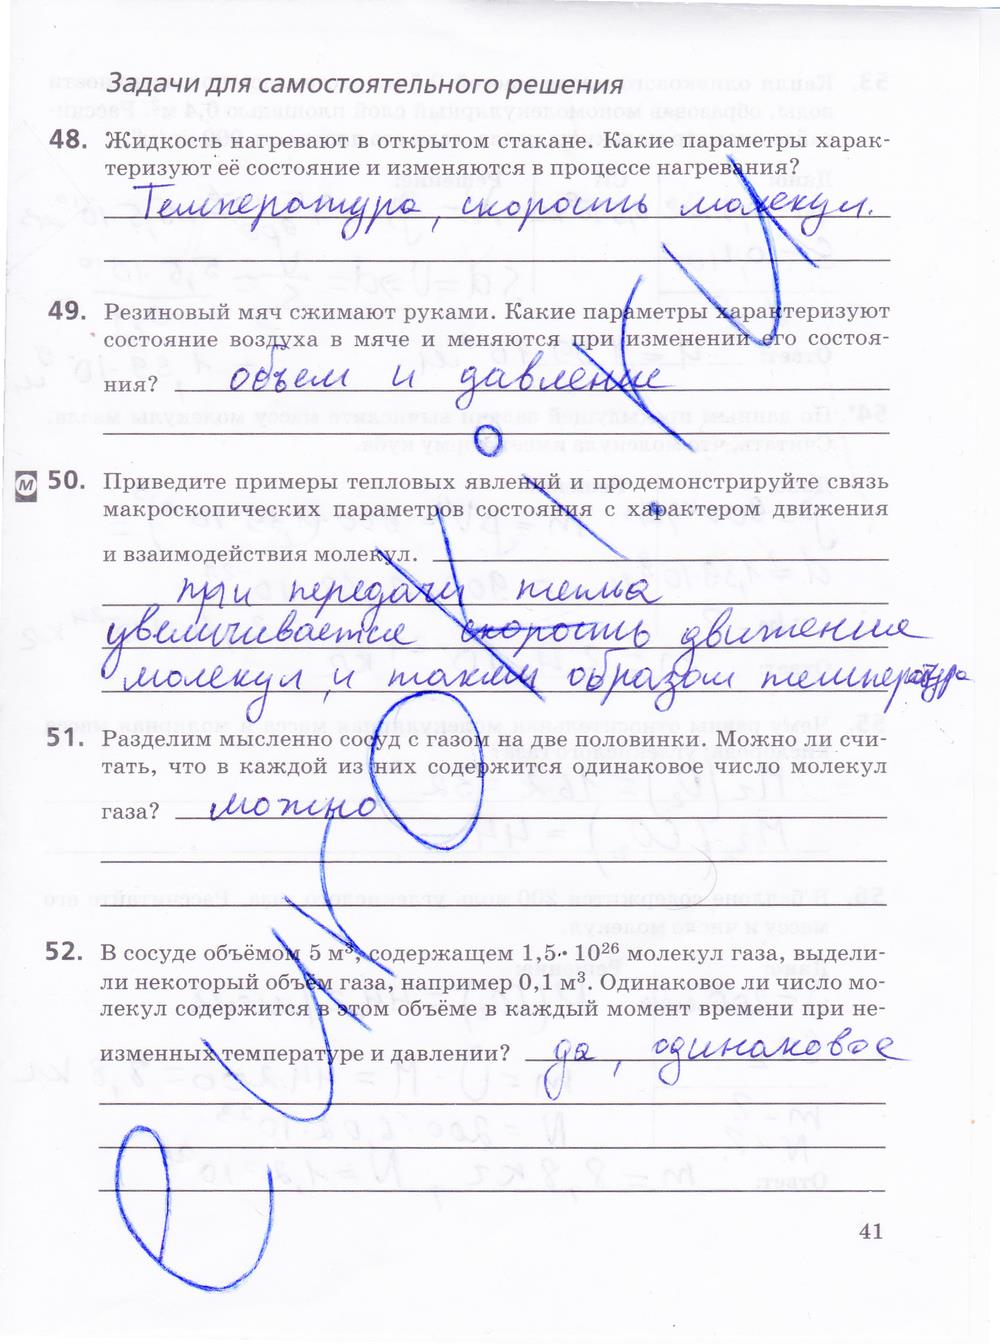 гдз 10 класс рабочая тетрадь страница 41 физика Пурышева, Важеевская